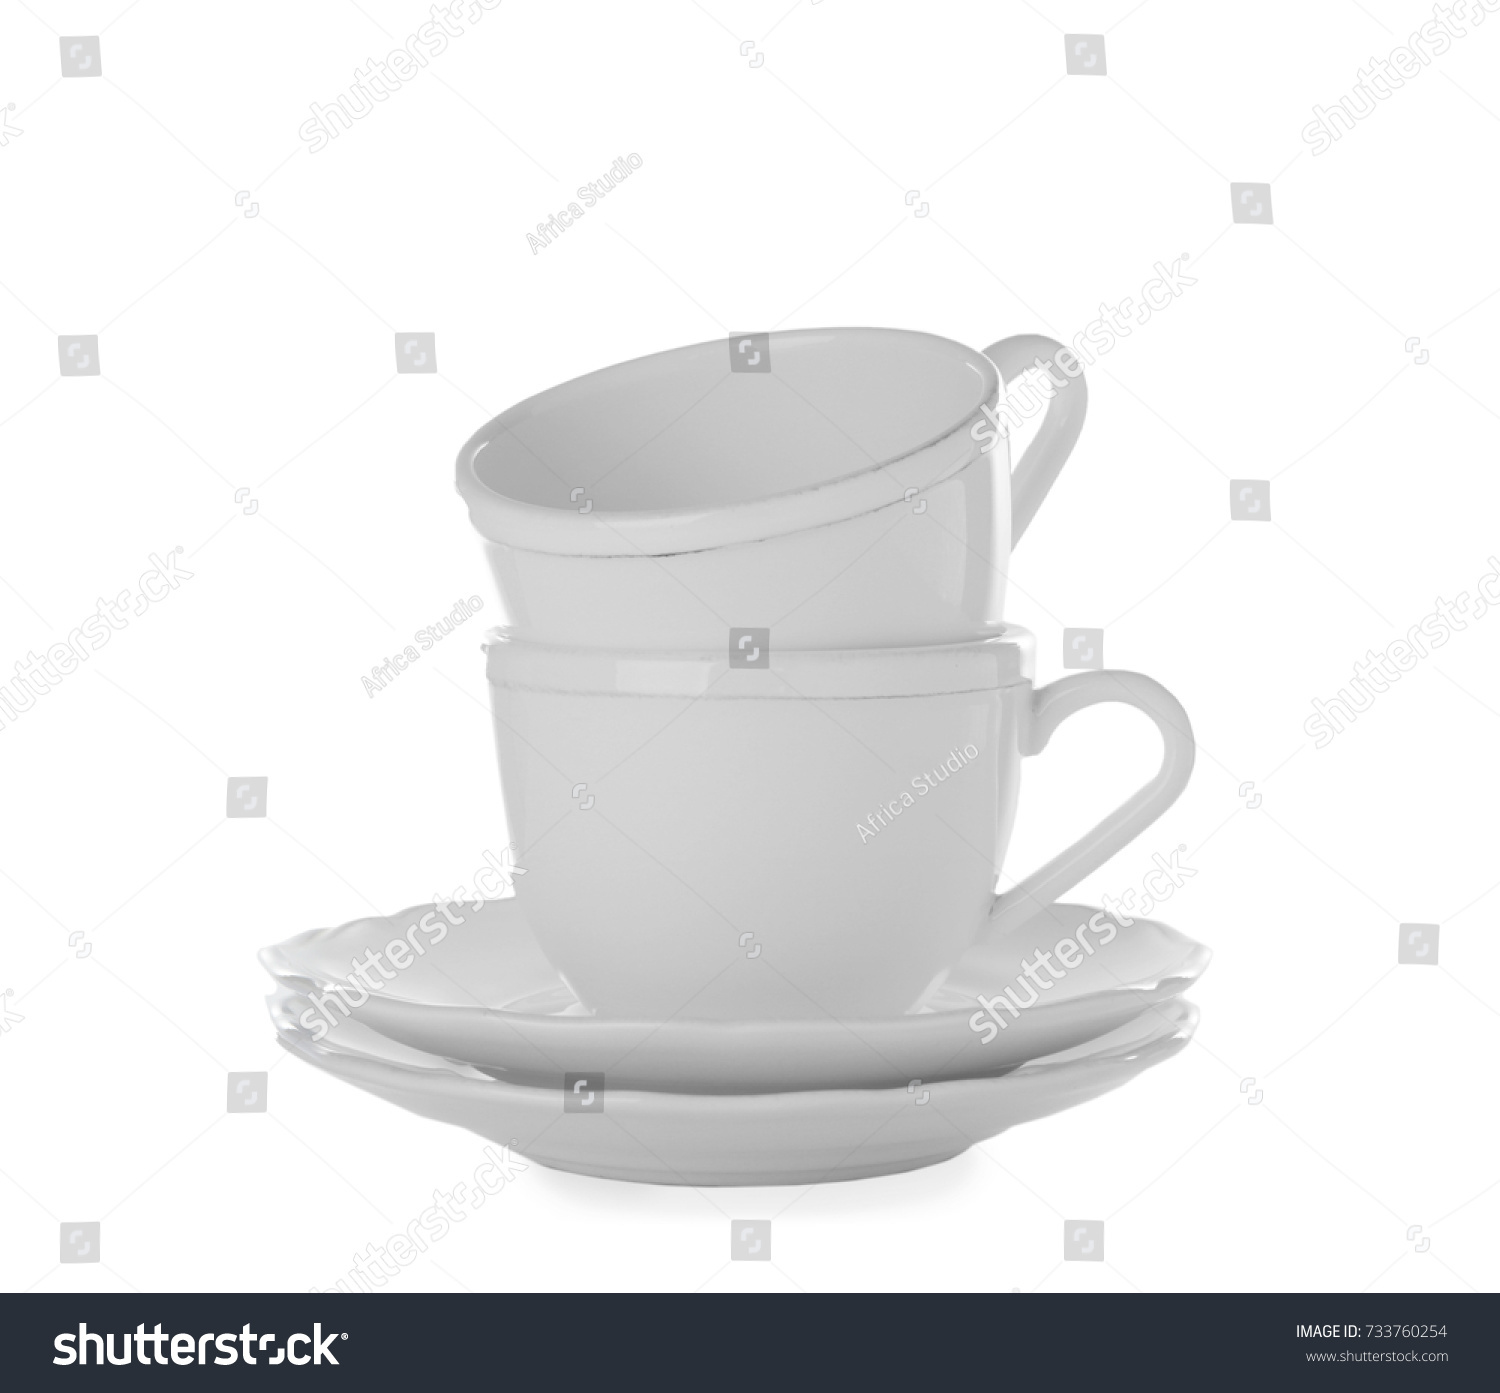 Ceramic dishware on white background #733760254